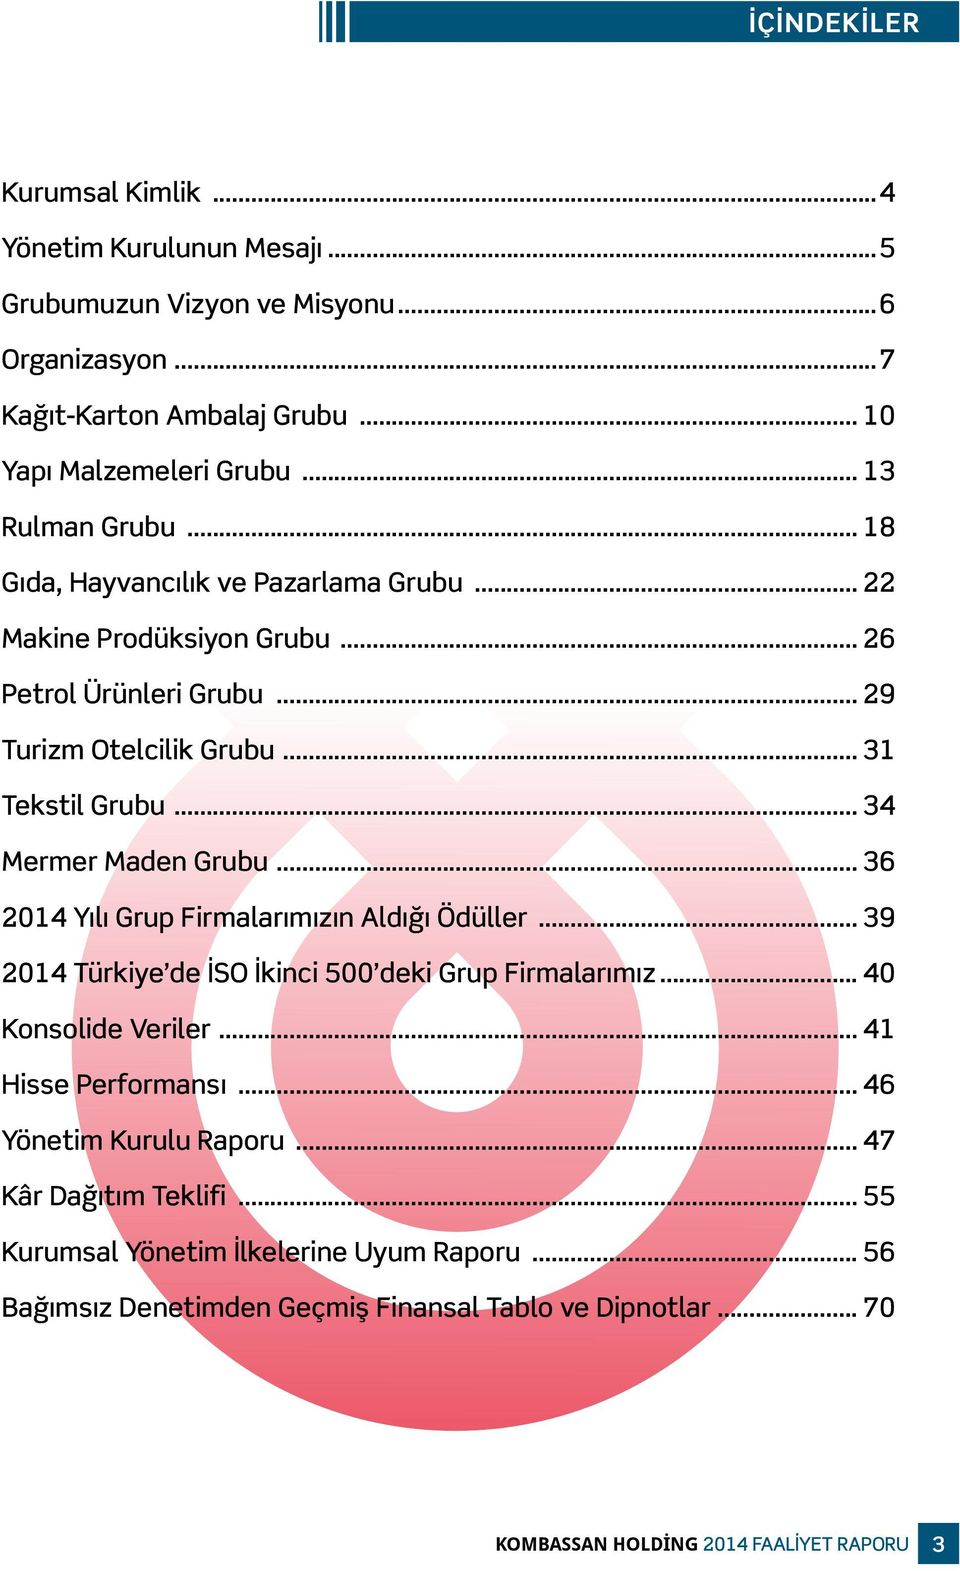 .. 34 Mermer Maden Grubu... 36 2014 Yılı Grup Firmalarımızın Aldığı Ödüller... 39 2014 Türkiye de İSO İkinci 500 deki Grup Firmalarımız... 40 Konsolide Veriler... 41 Hisse Performansı.